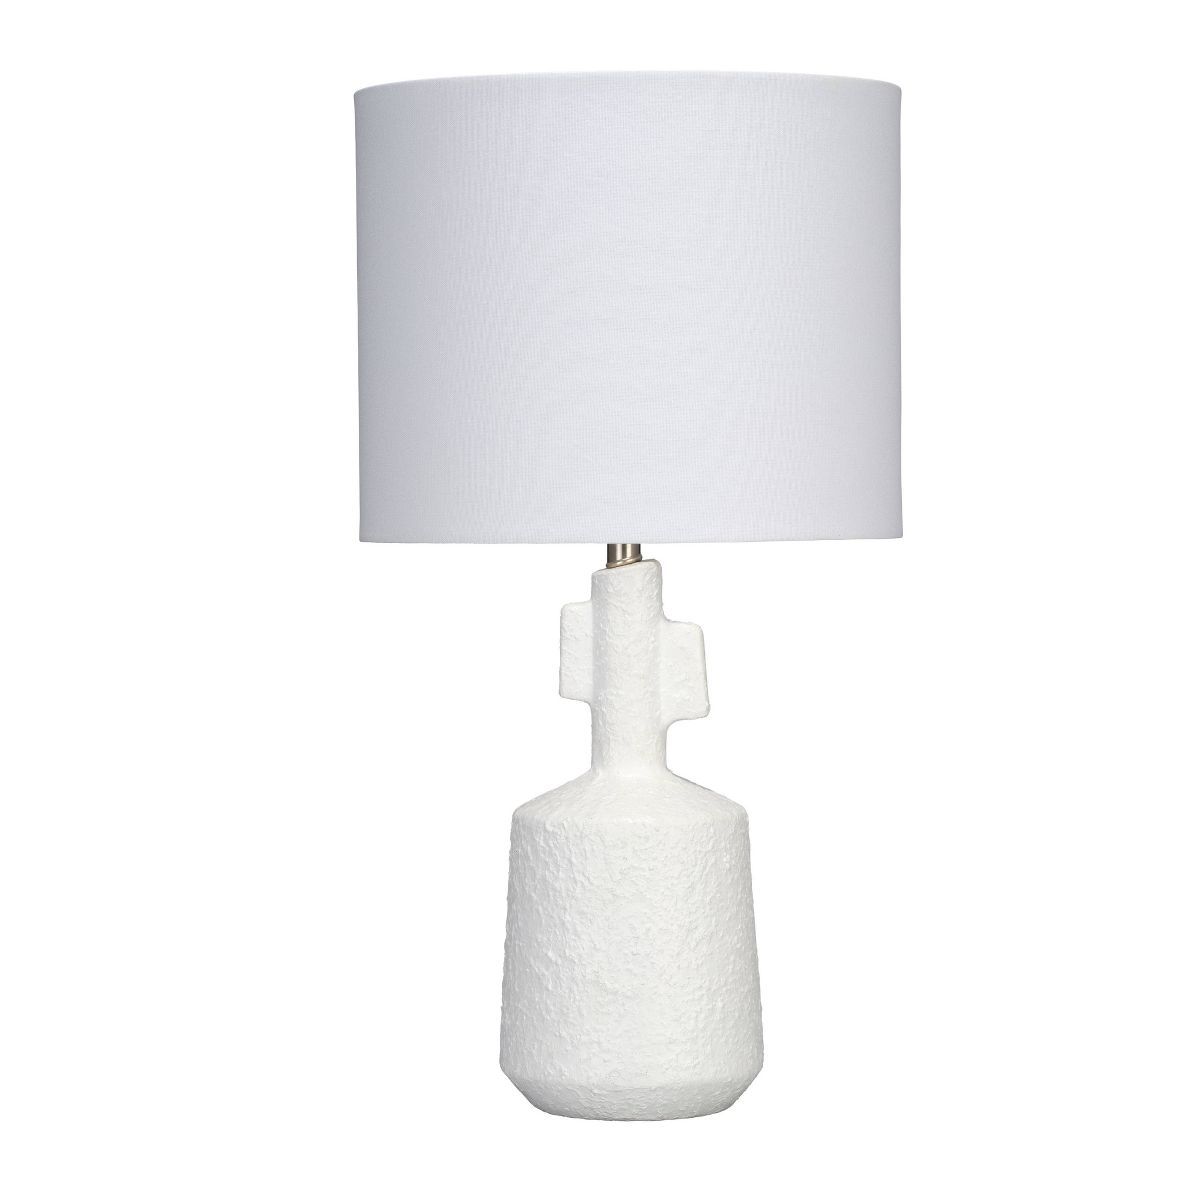 Mavern Ceramic Table Lamp White - Splendor Home | Target